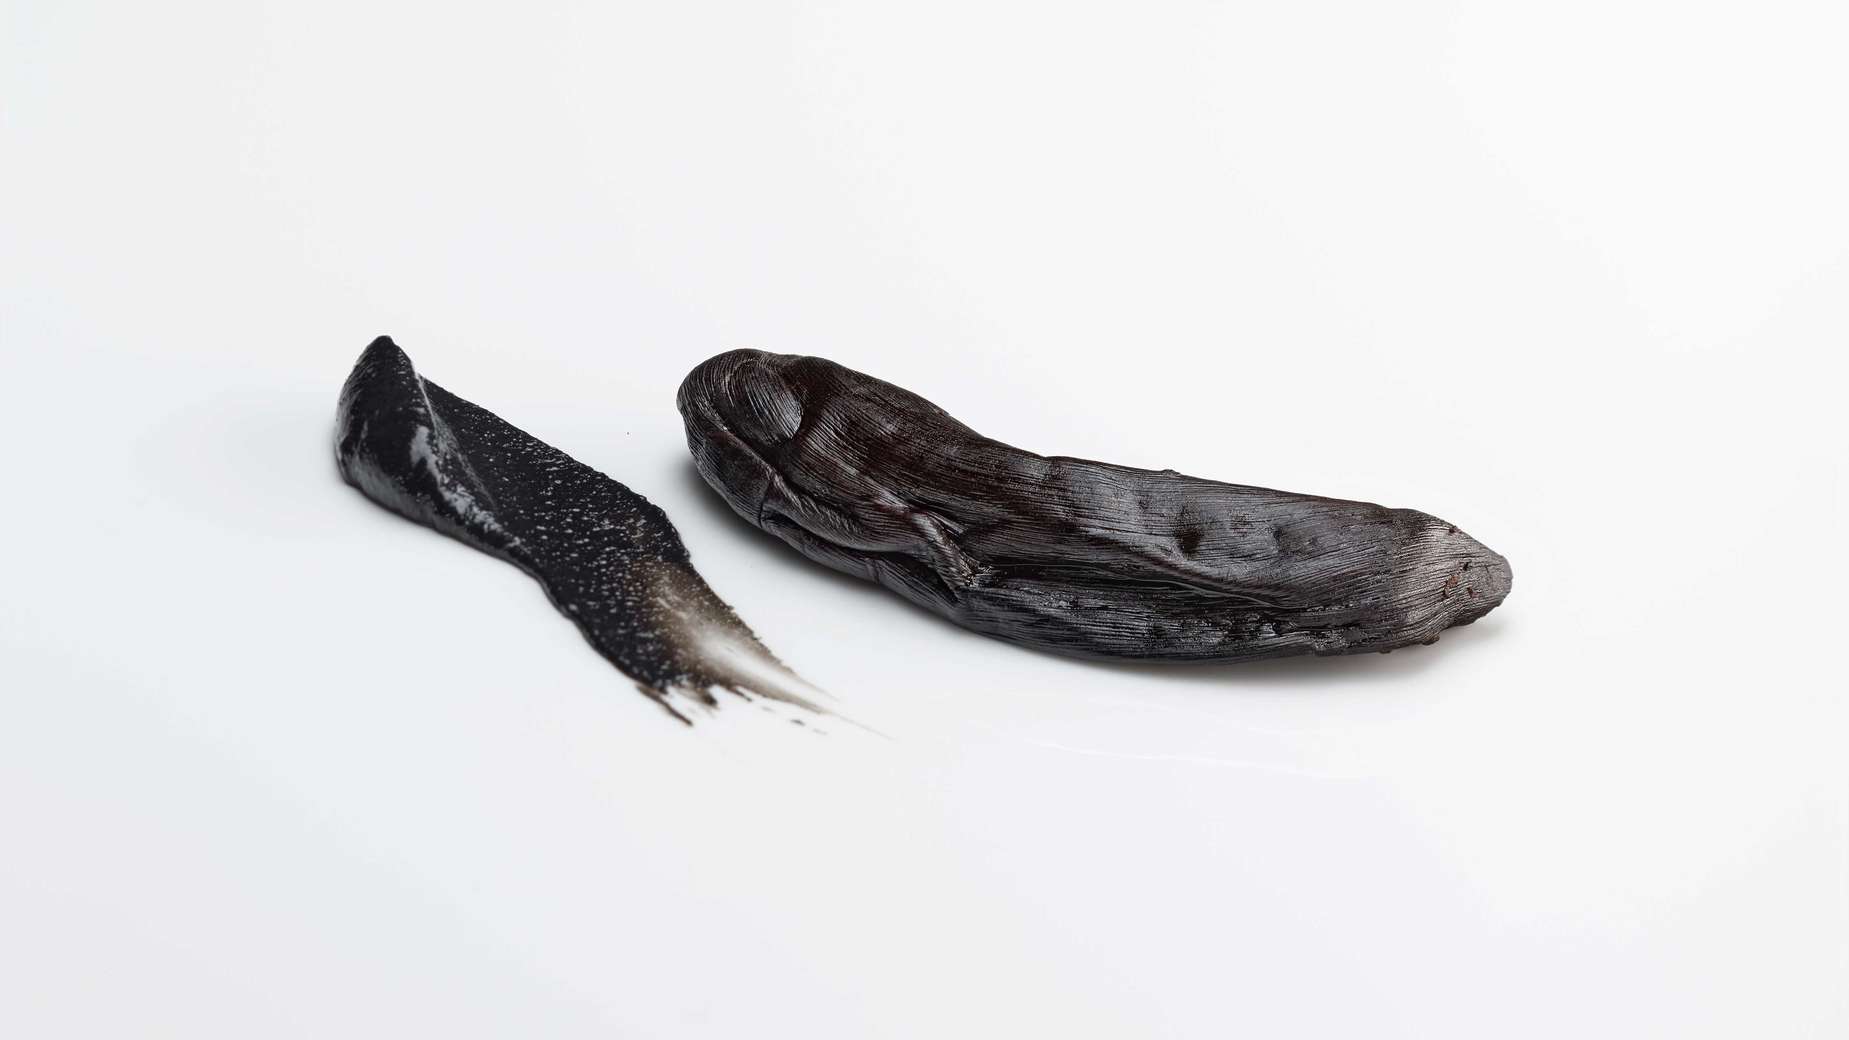 Pieza de banana negra y pasta de gambas.
FOTO: José Luis López de Zubiría / Mugaritz